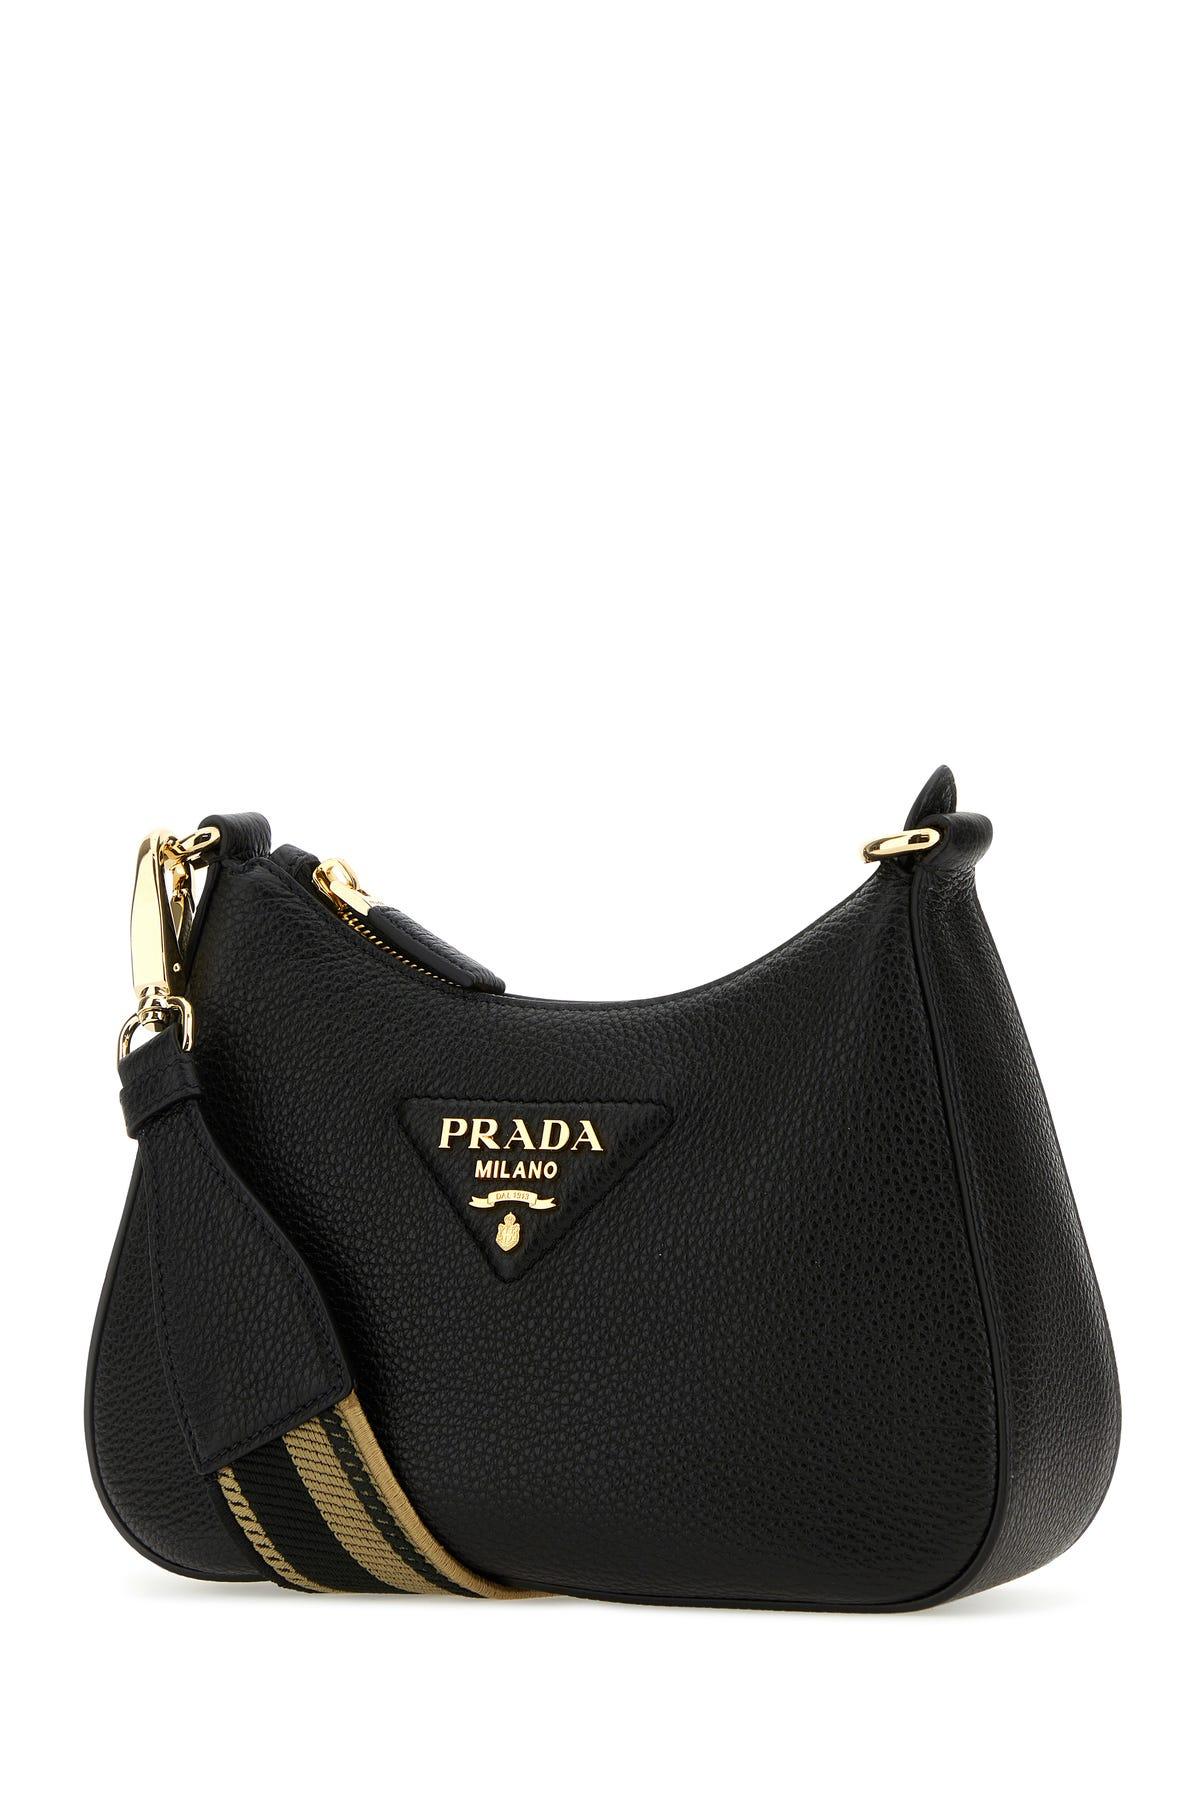 Prada Leather Shoulder Bag in Black | Lyst